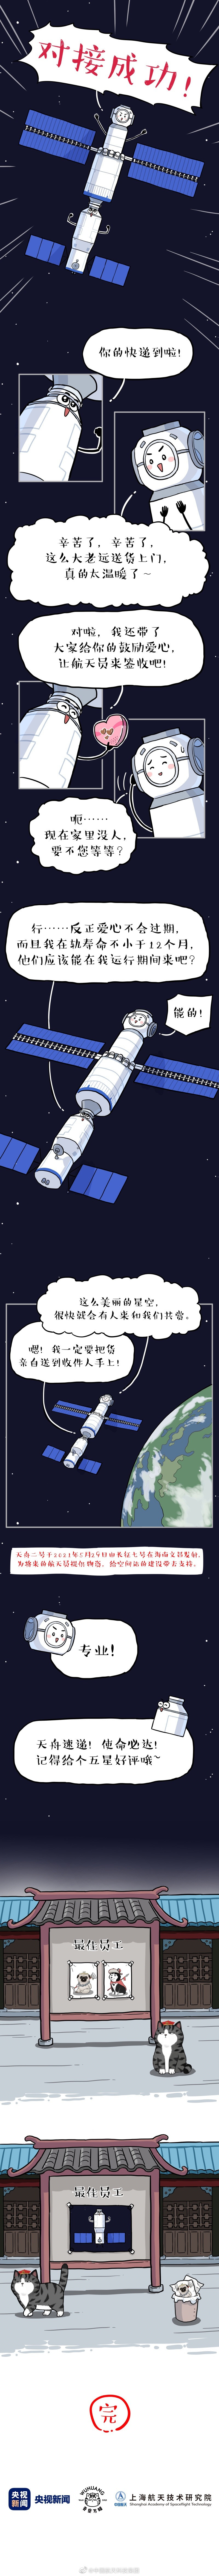 【奖品寄出】珀莱雅与中国航天跨界联名；这个快递小哥超嚣张！